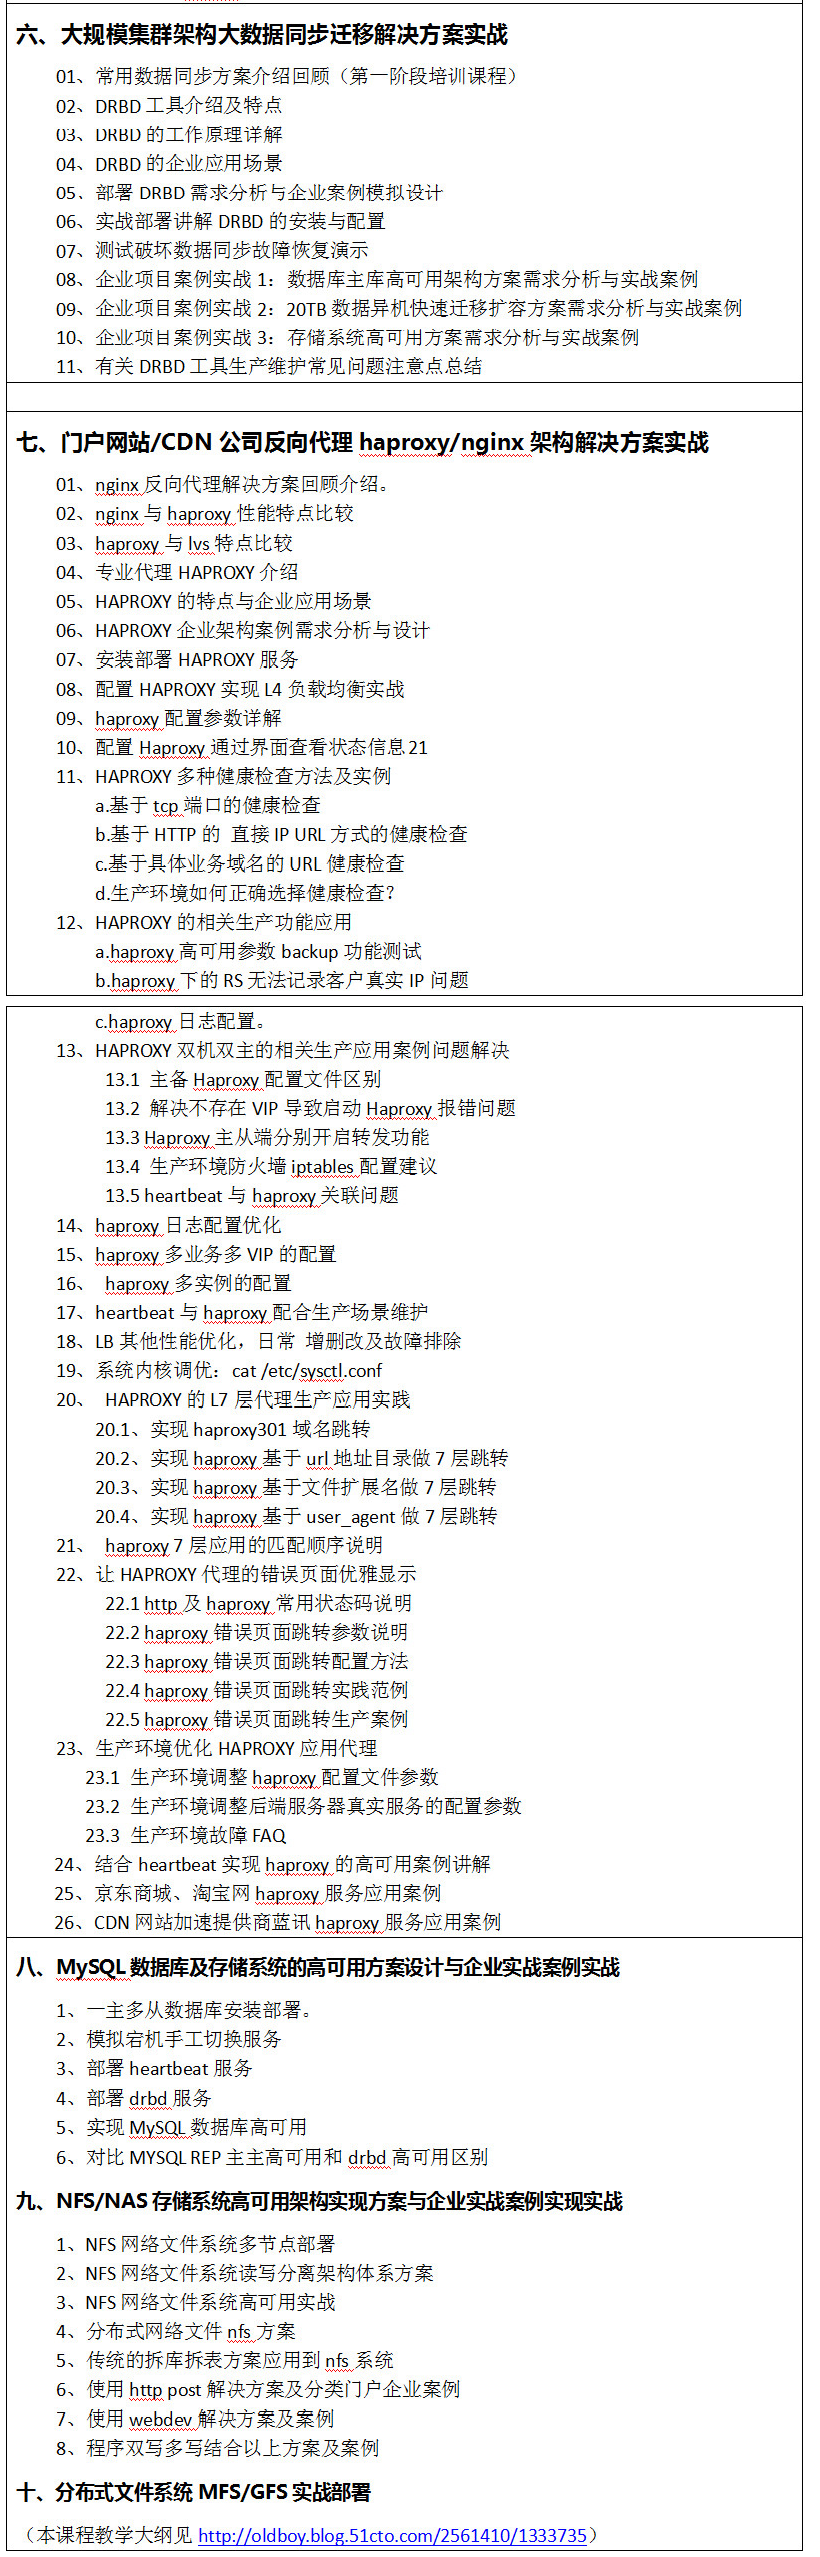 老男孩的运维笔记文档-顶级架构师课程列表(二)_linux运维培训_02